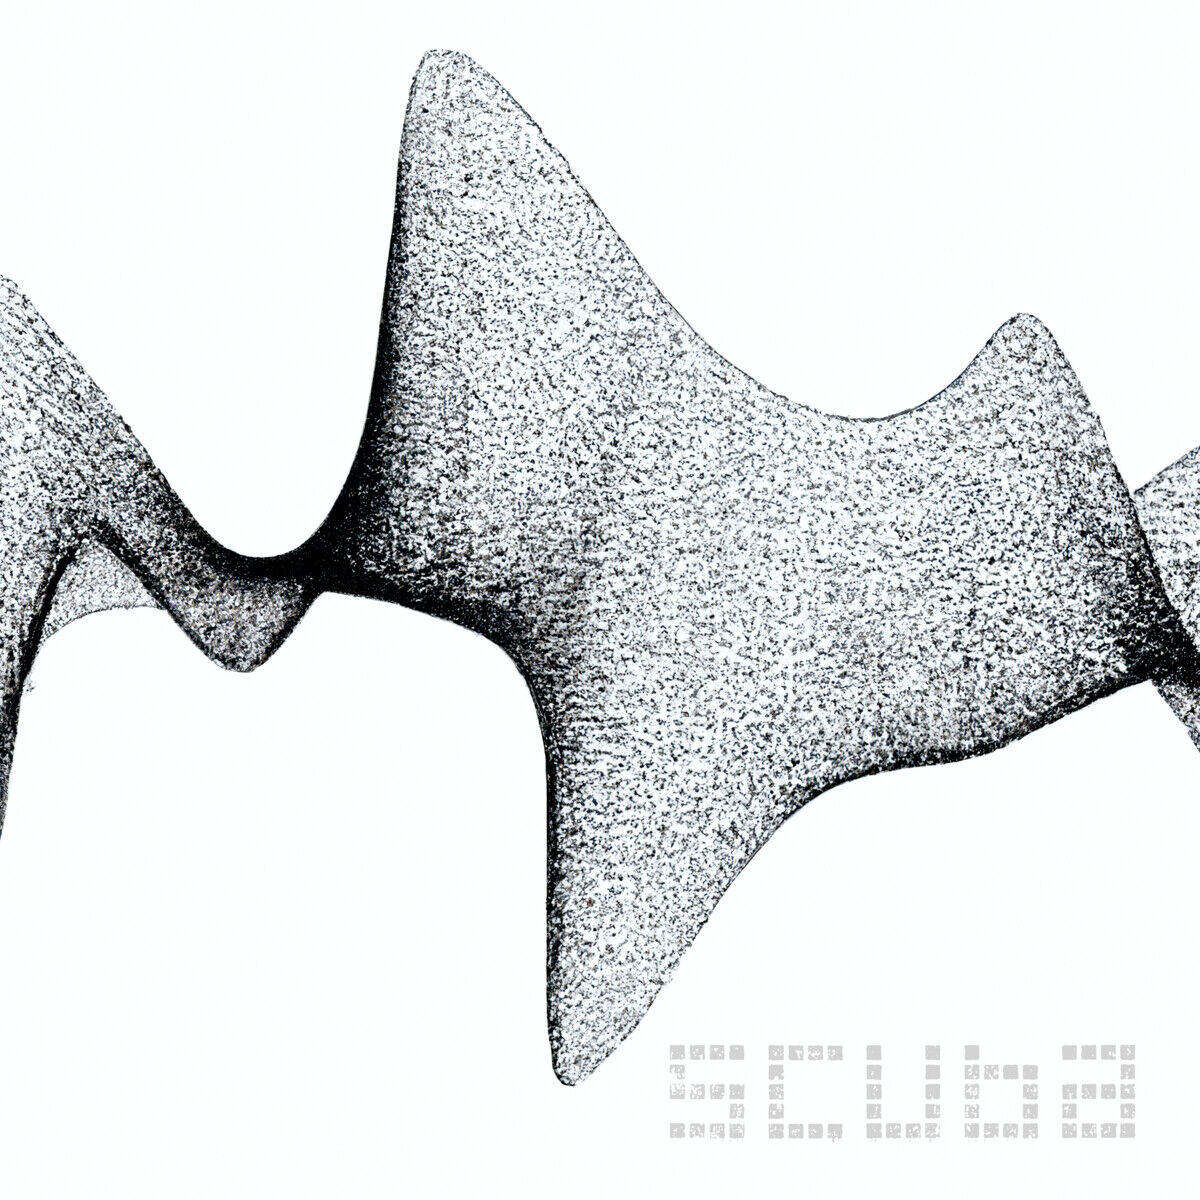 image cover: Scuba - Give Up Everything (Digital Underground) on Hotflush Recordings